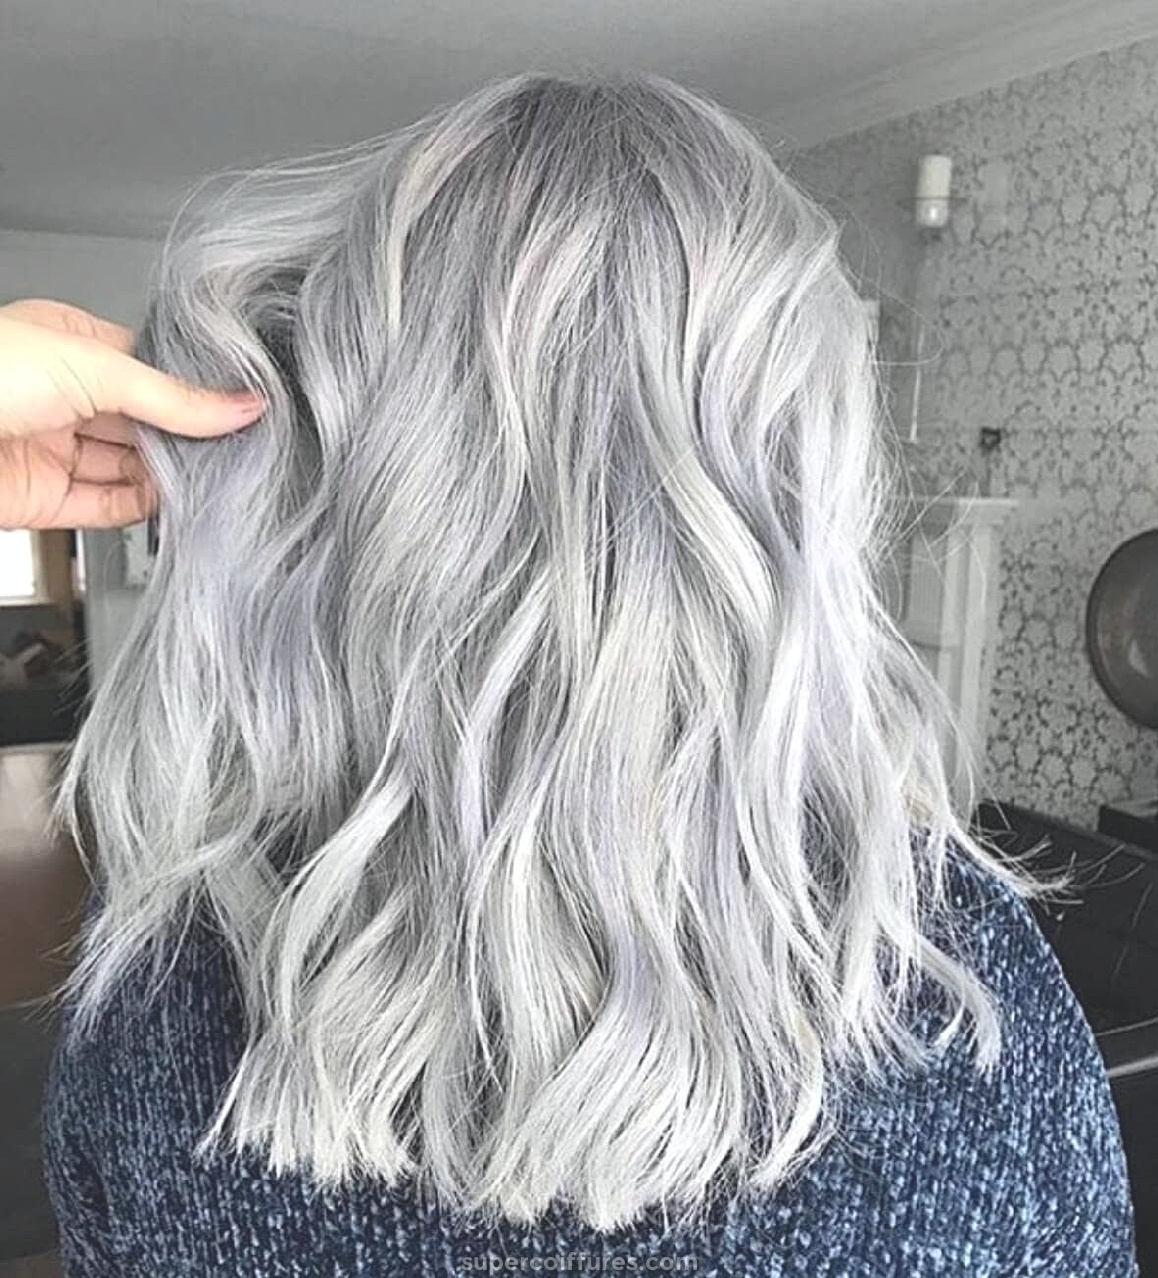 25 couleurs de cheveux argentés qui sont absolument magnifiques